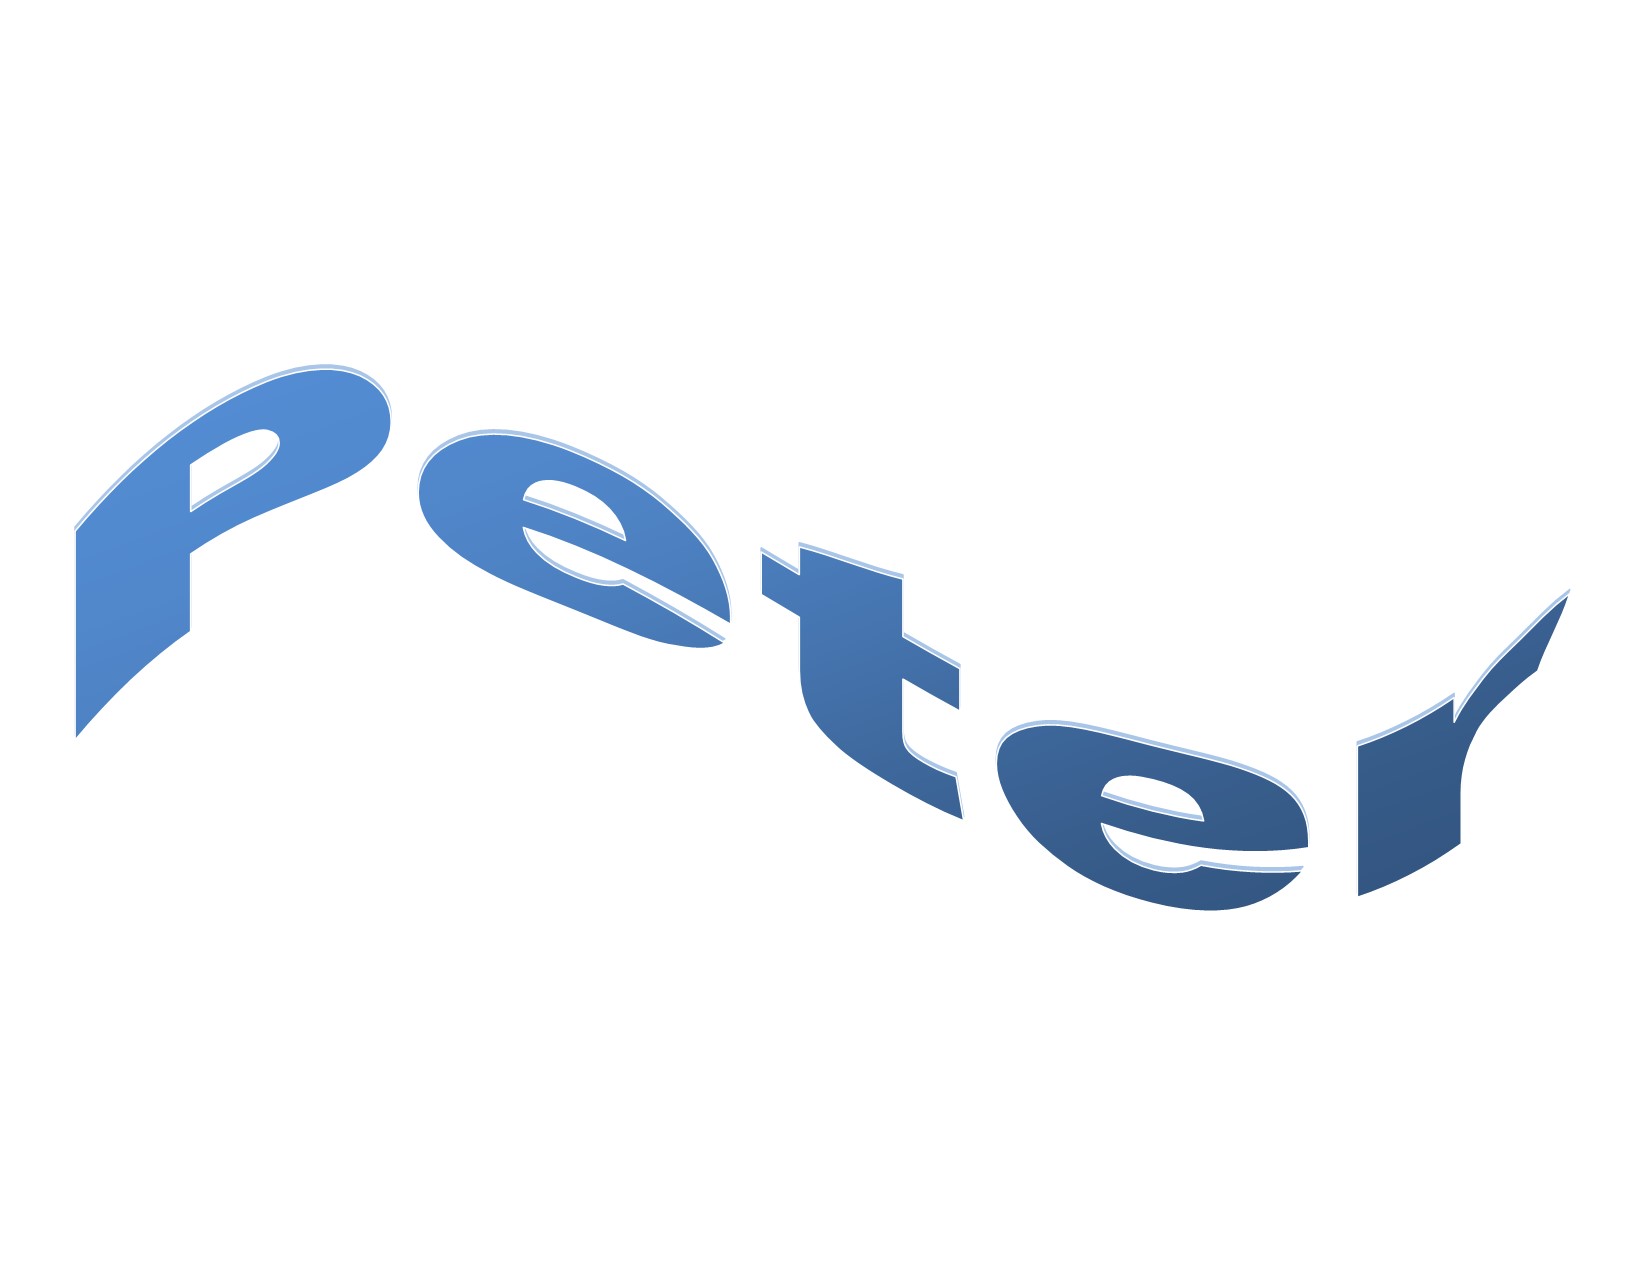 Peter’s songs